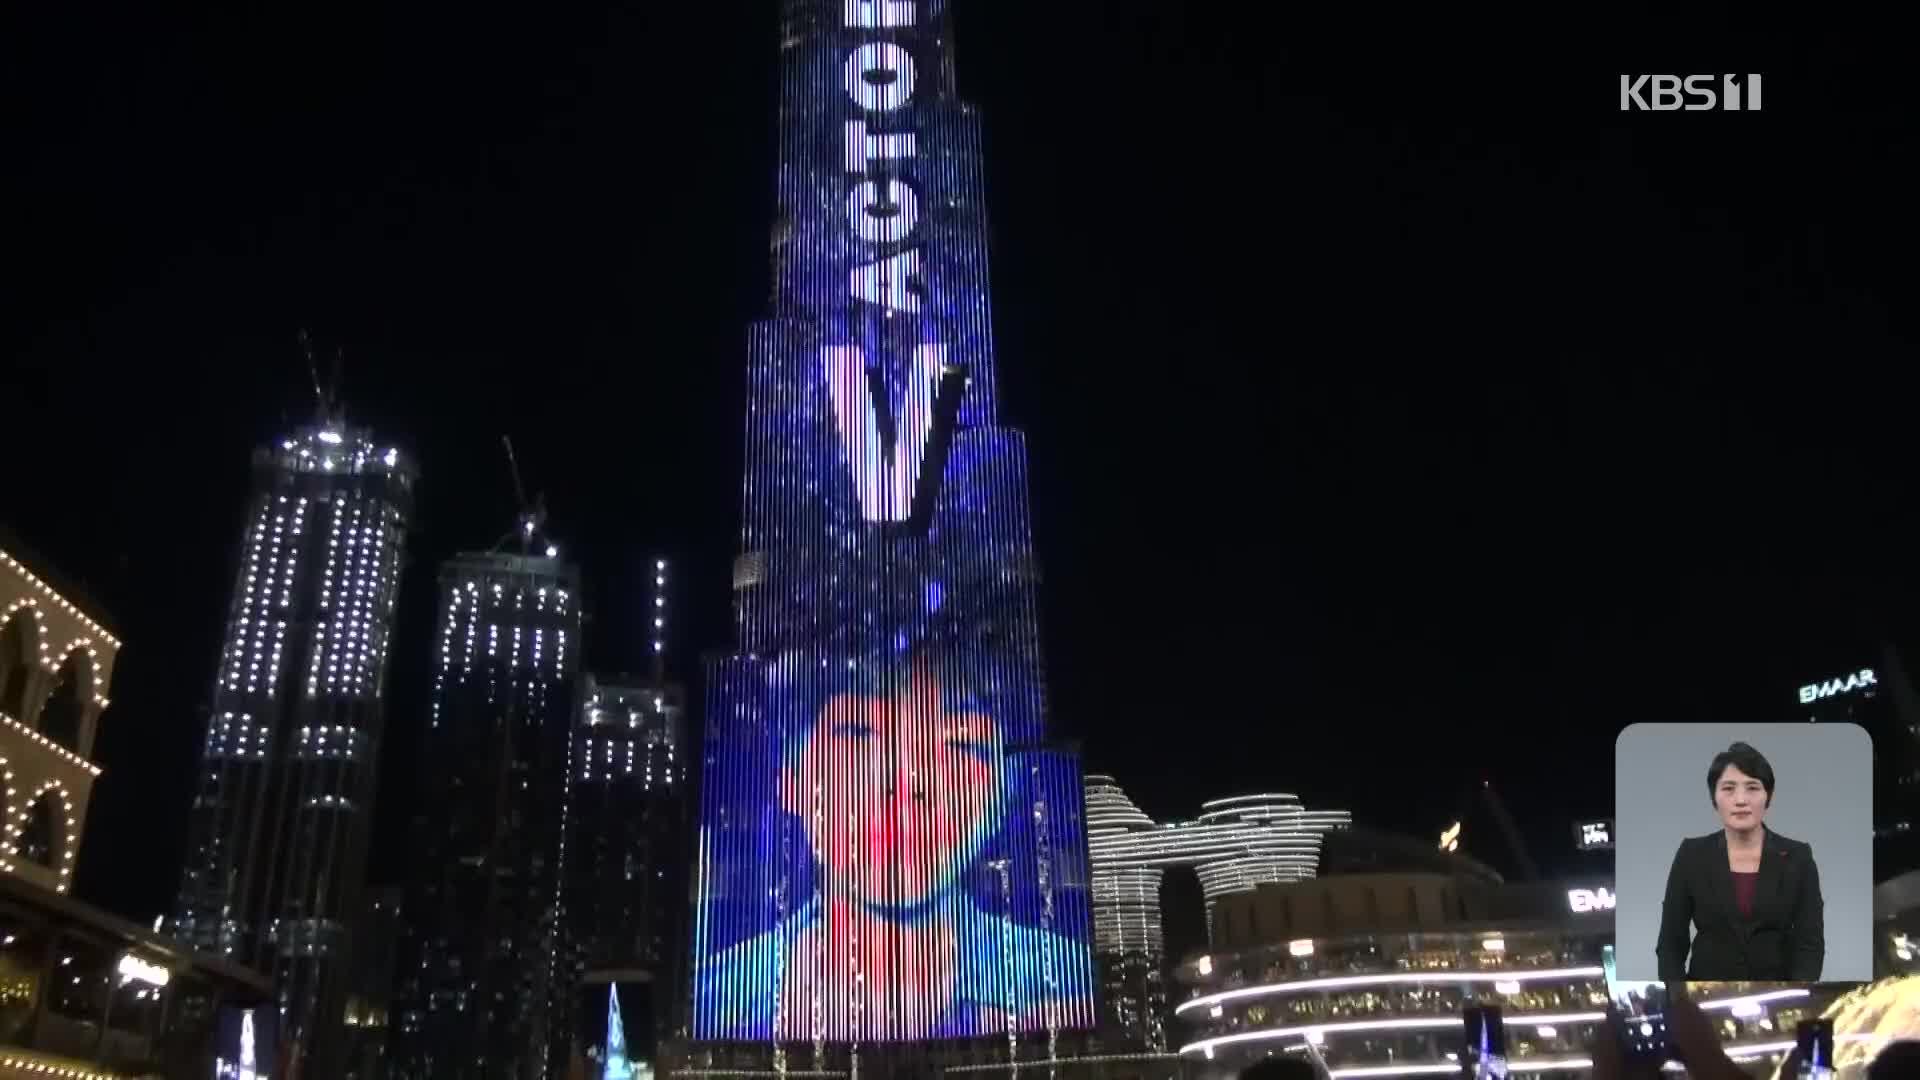 세계 최고층 건물 ‘부르즈 할리파’에 BTS 뷔 생일축하 메시지